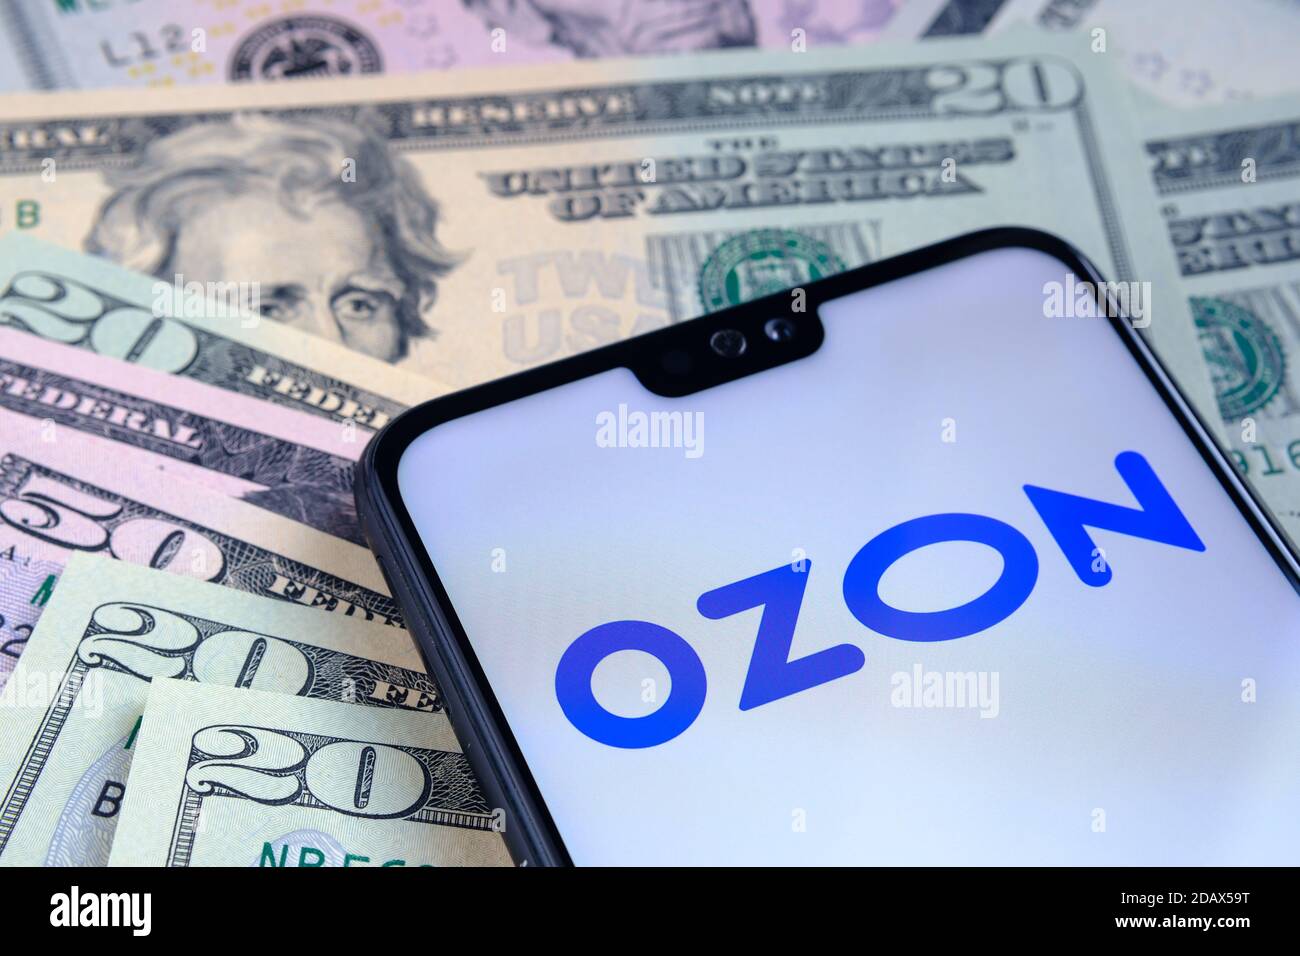 Stafford / Regno Unito - Novembre 15 2020: Ozon e-commerce logo aziendale visto sullo schermo dello smartphone, messo su bollette del dollaro. Concetto per gli initi Foto Stock